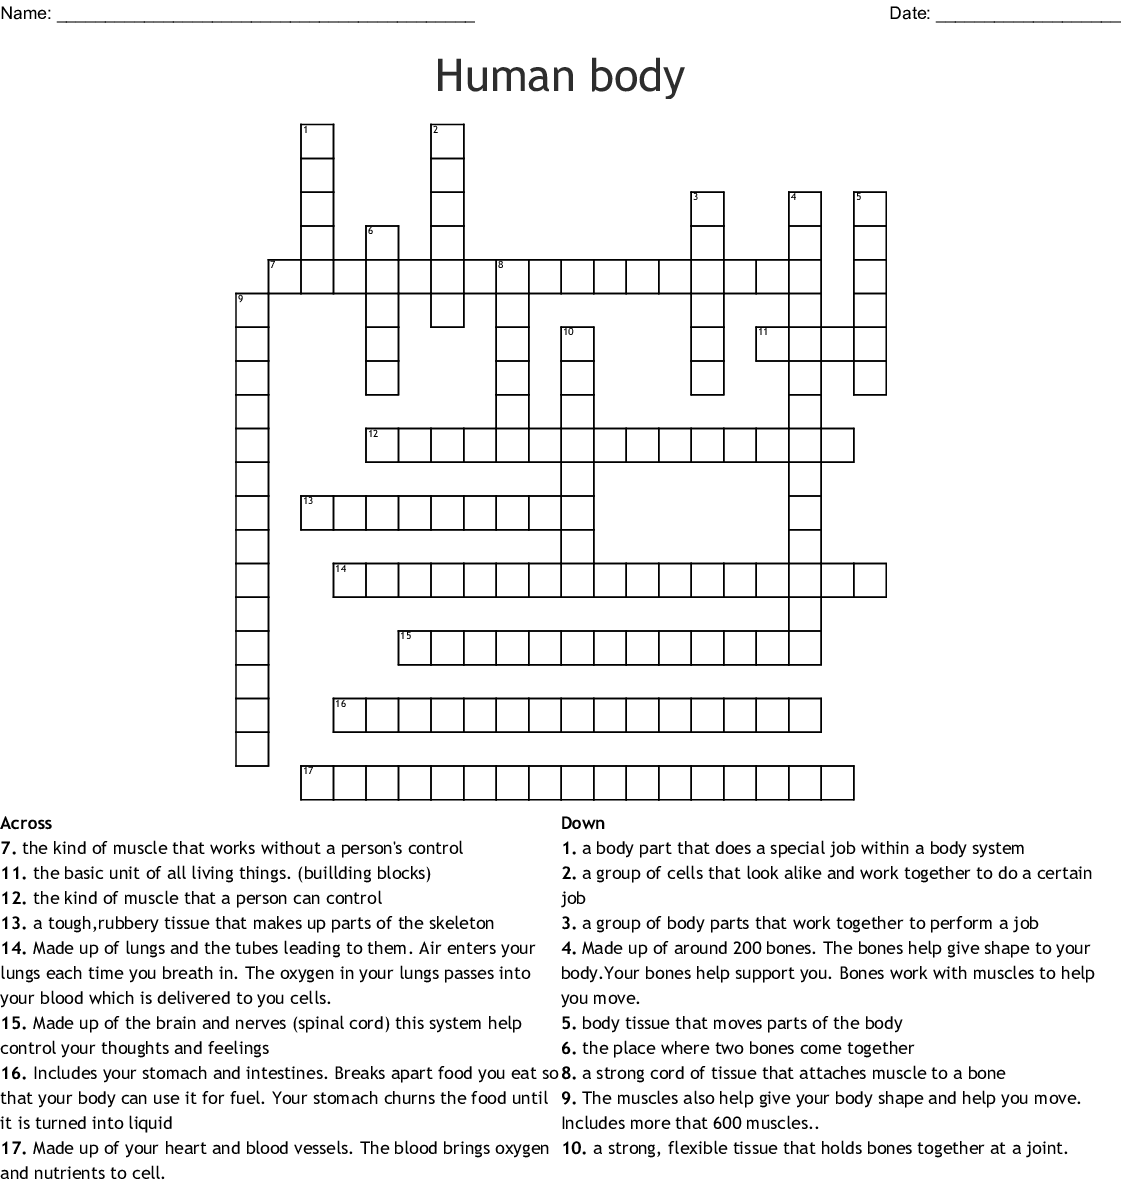 Human Body Crossword Puzzle Printable